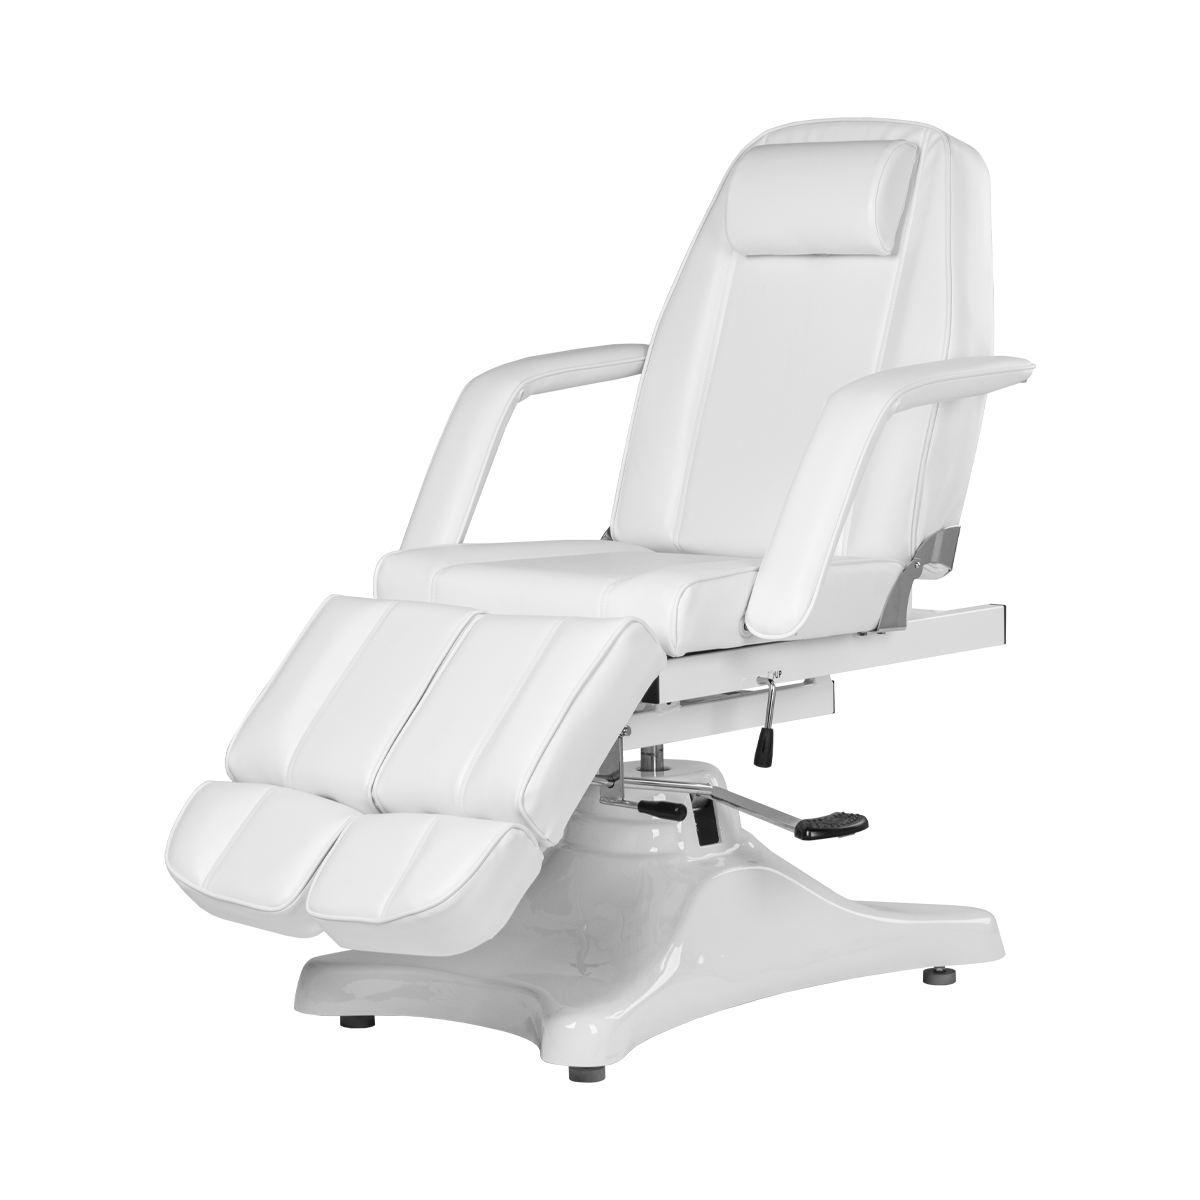 Педикюрное кресло МД-823А, гидравлика - 1 